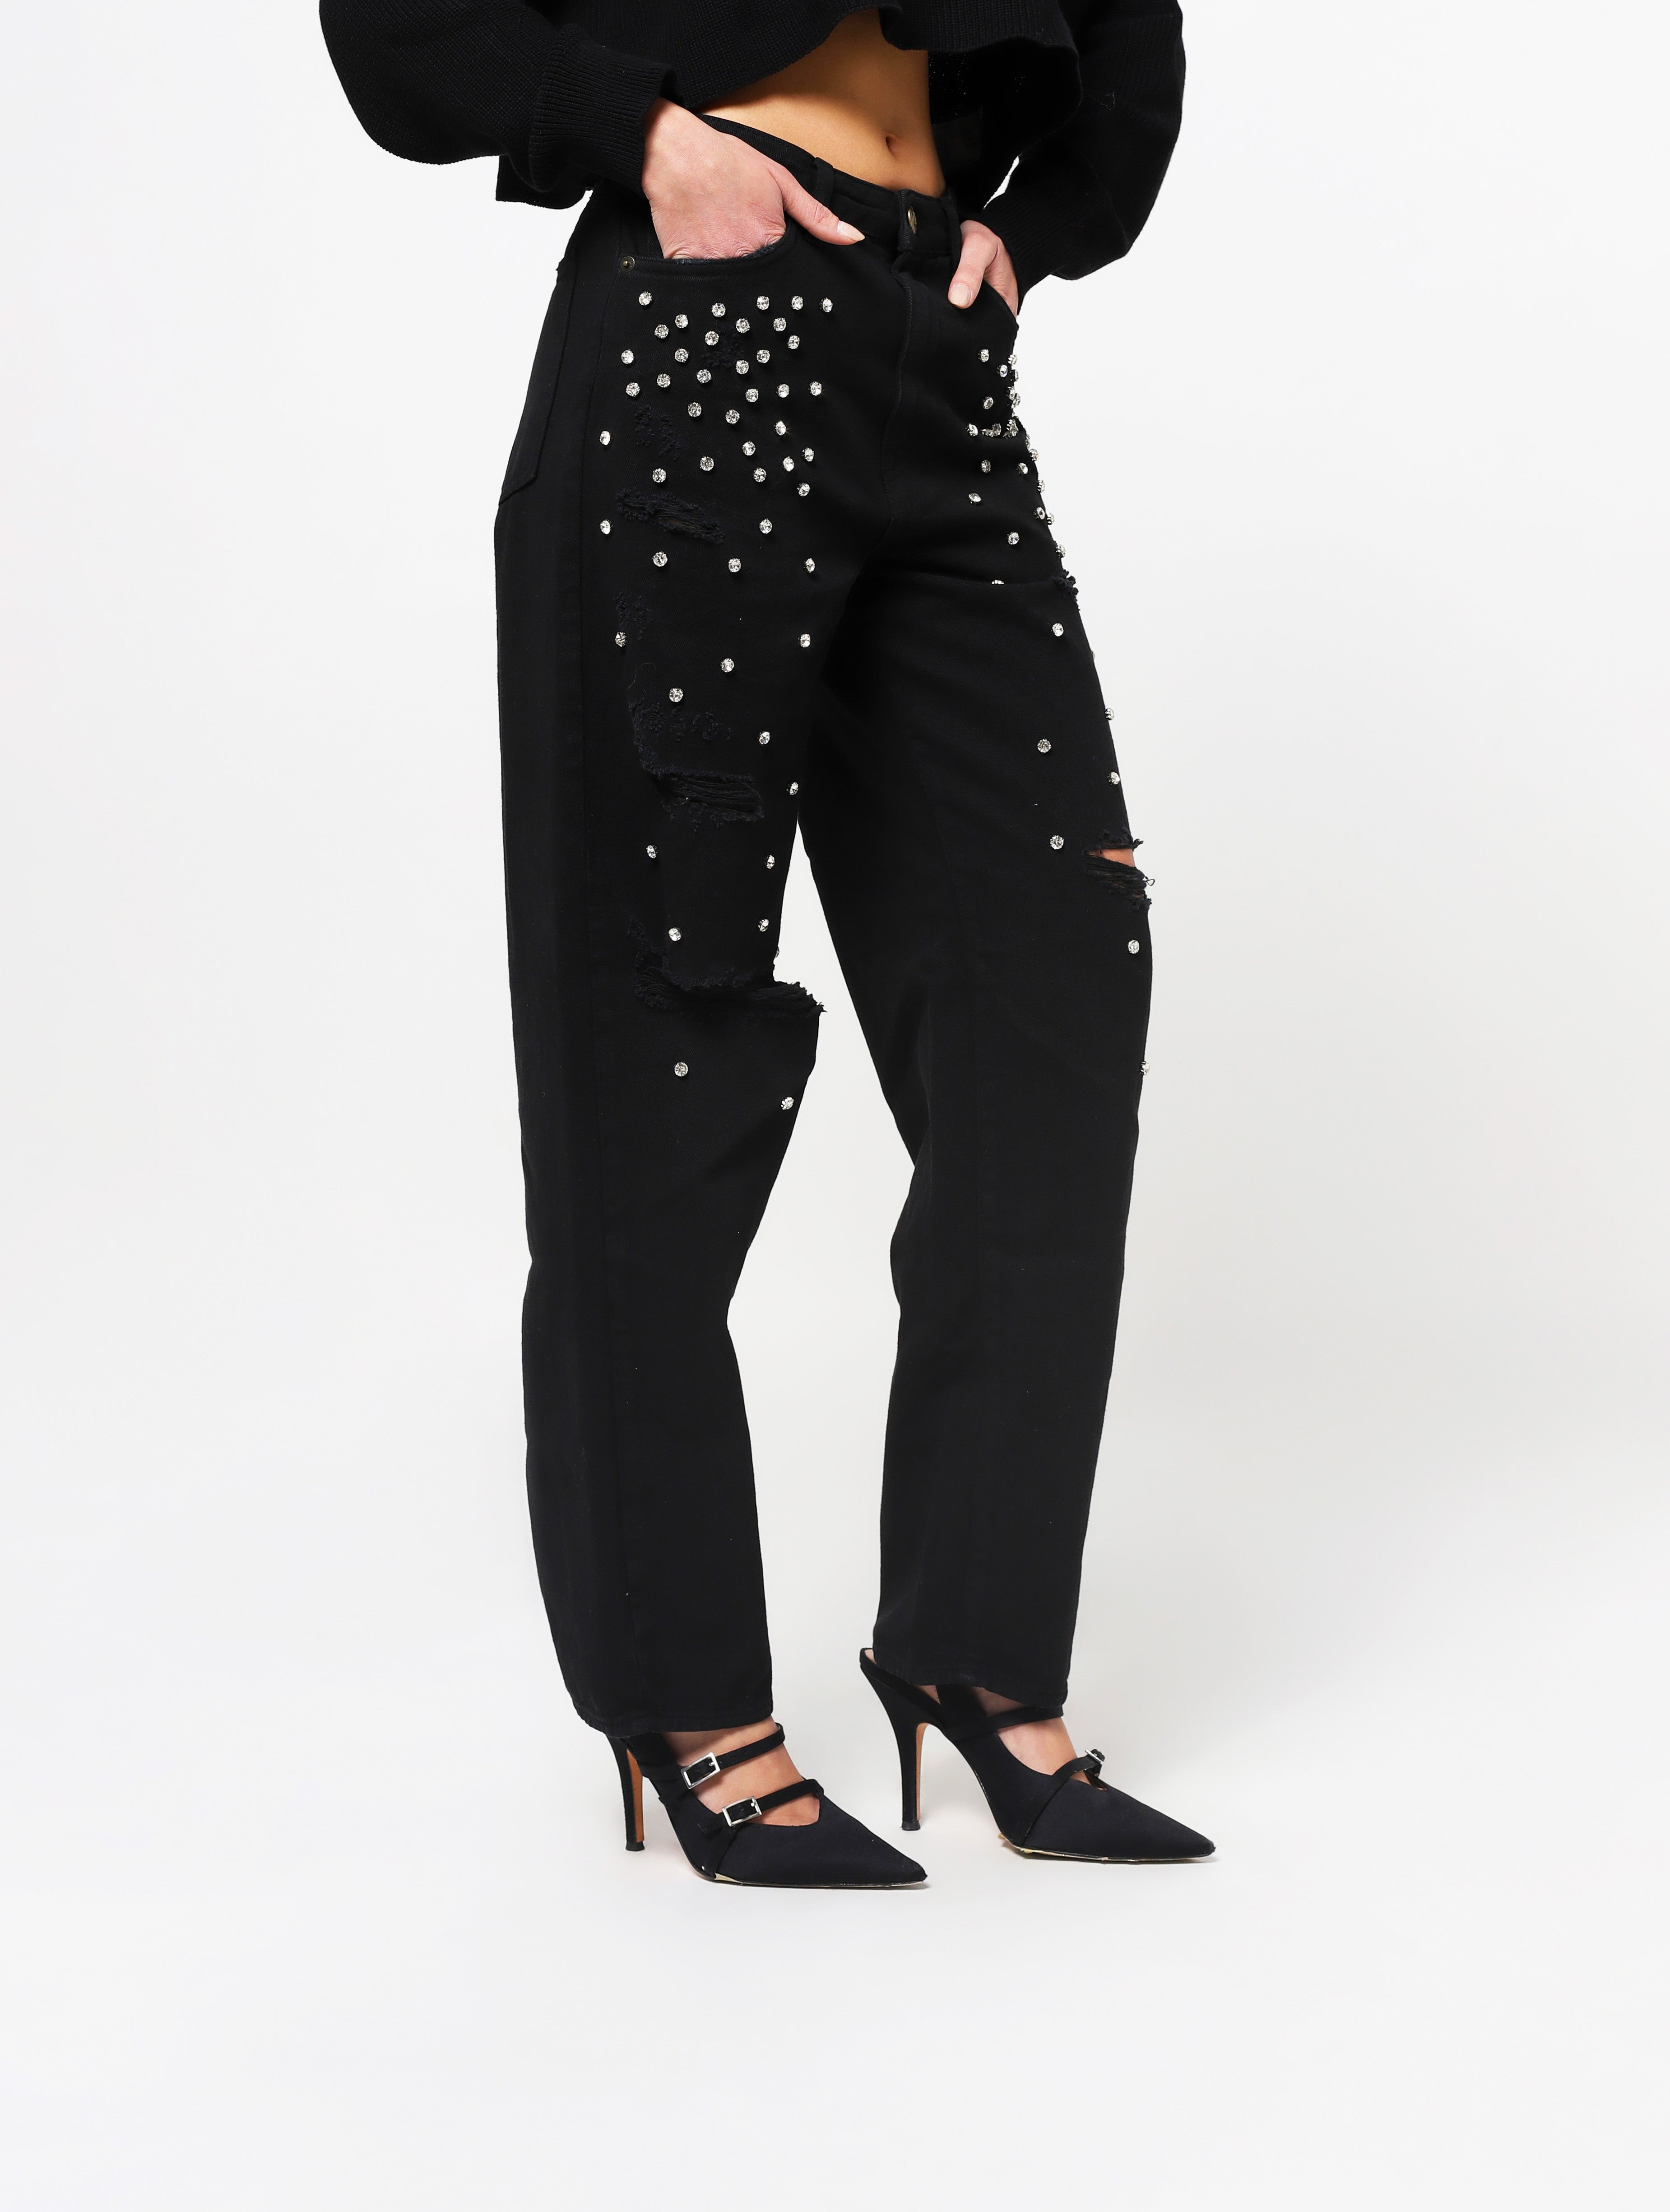 Jeans con 5 tasche, gioielli applicati e lacerazioni sulla parte frontale del pantalone, patch applicata posteriore piccola con nome del brand - nero donna  - 2